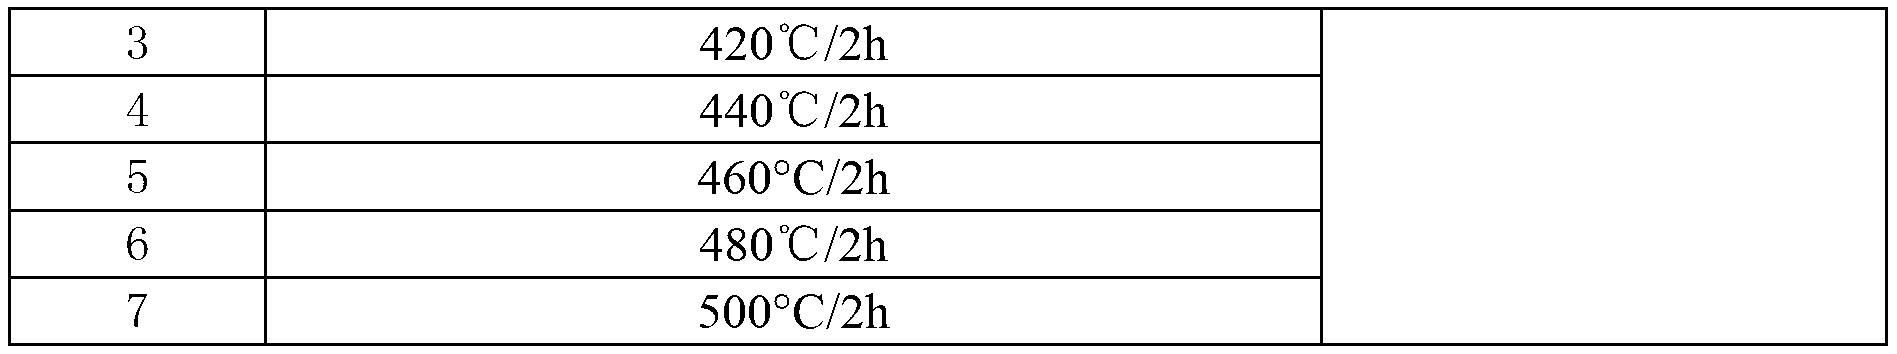 High-temperature annealing method of Al-Li-Cu-X serial aluminum lithium alloy